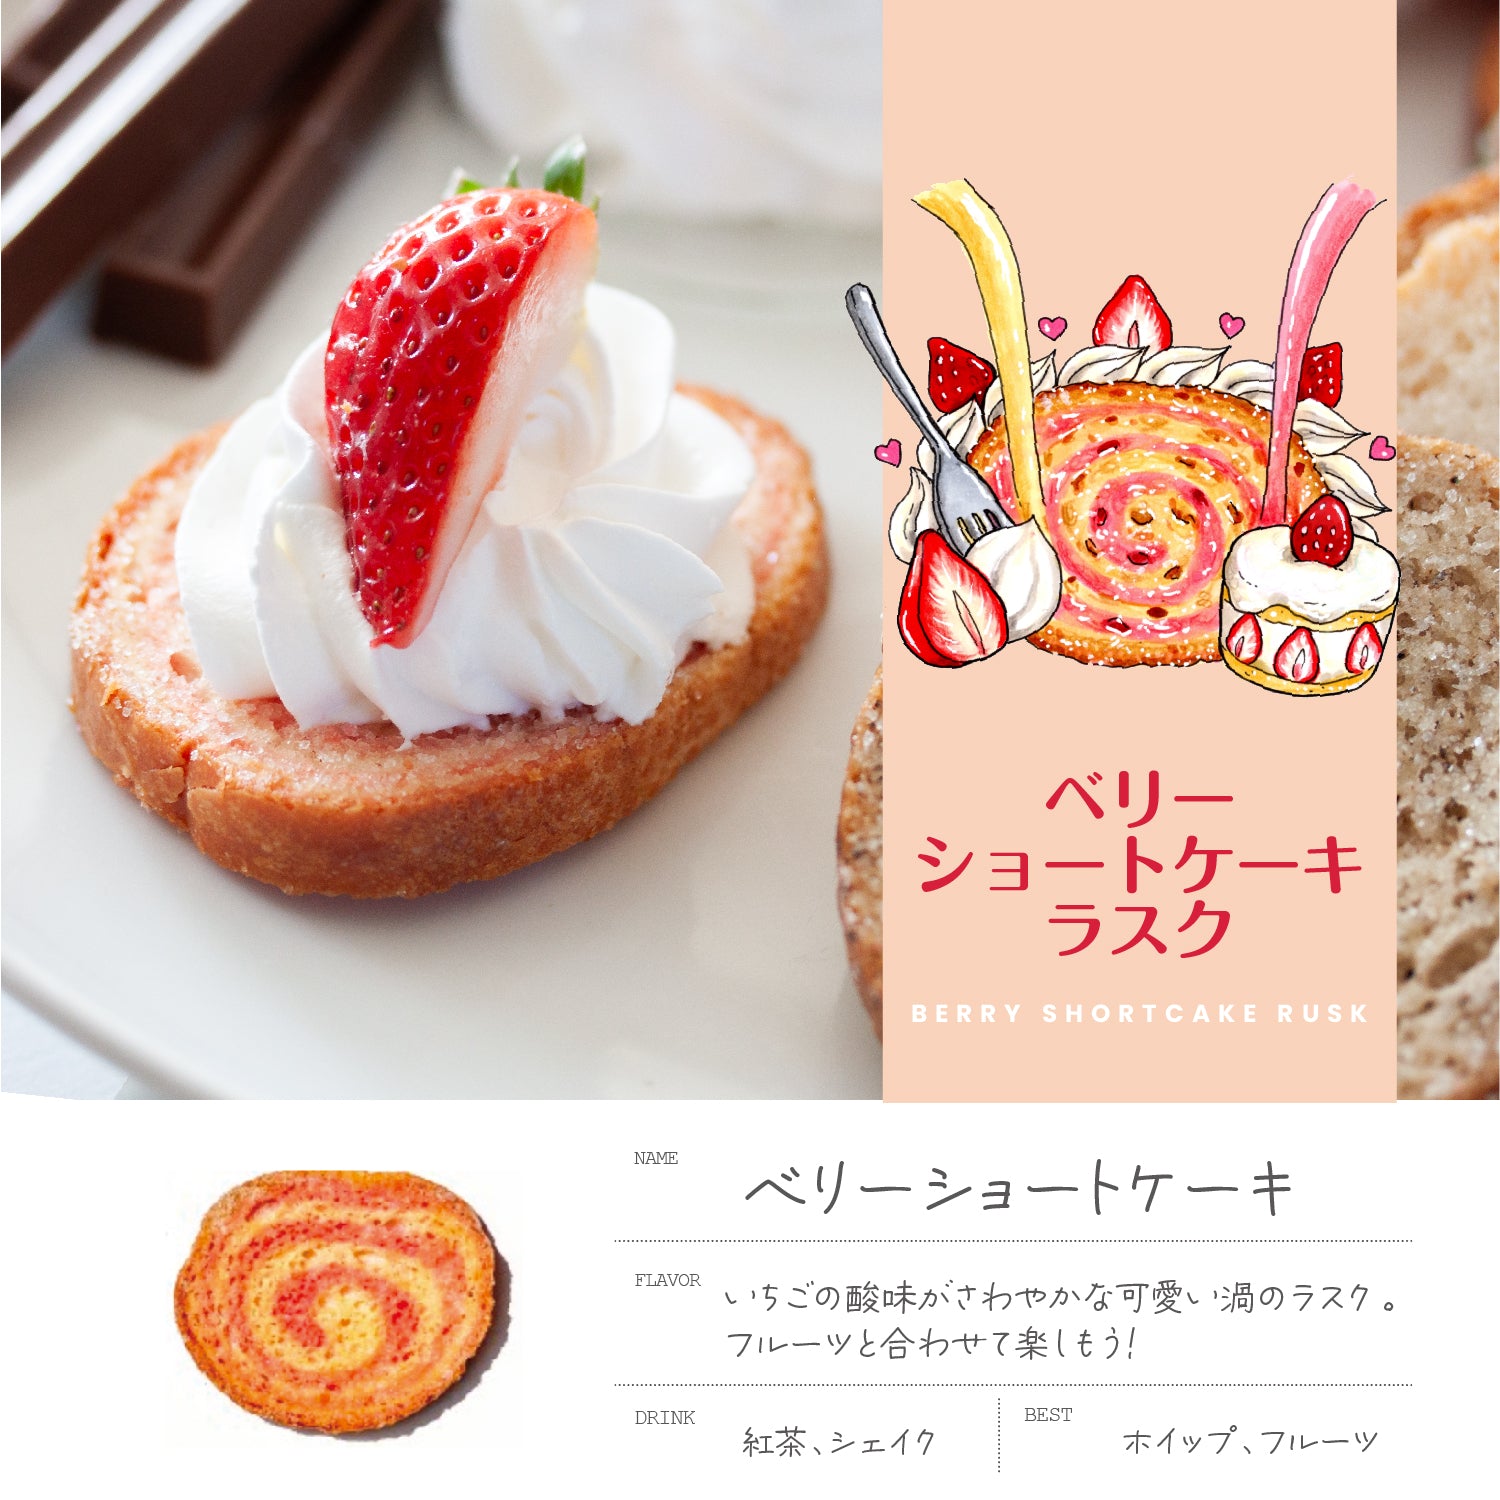 <span class="title">鎌倉山ラスクデコレーションアレンジレシピ「いちごとクリームで作るラスクケーキ」のご紹介♪</span>